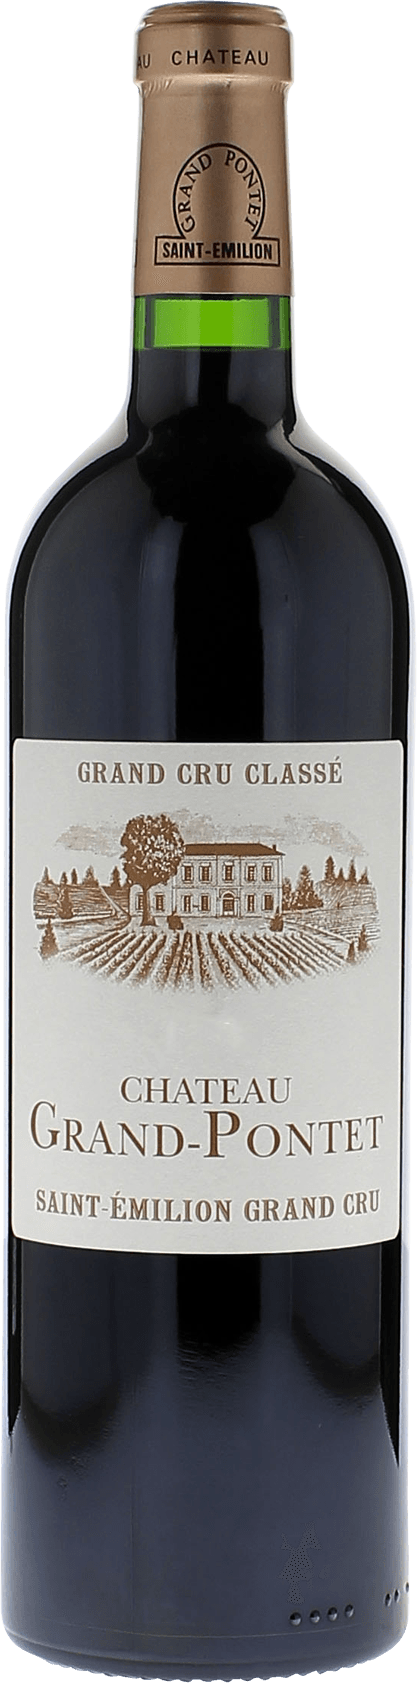 Grand pontet 2016 Grand cru class Saint-Emilion, Bordeaux rouge